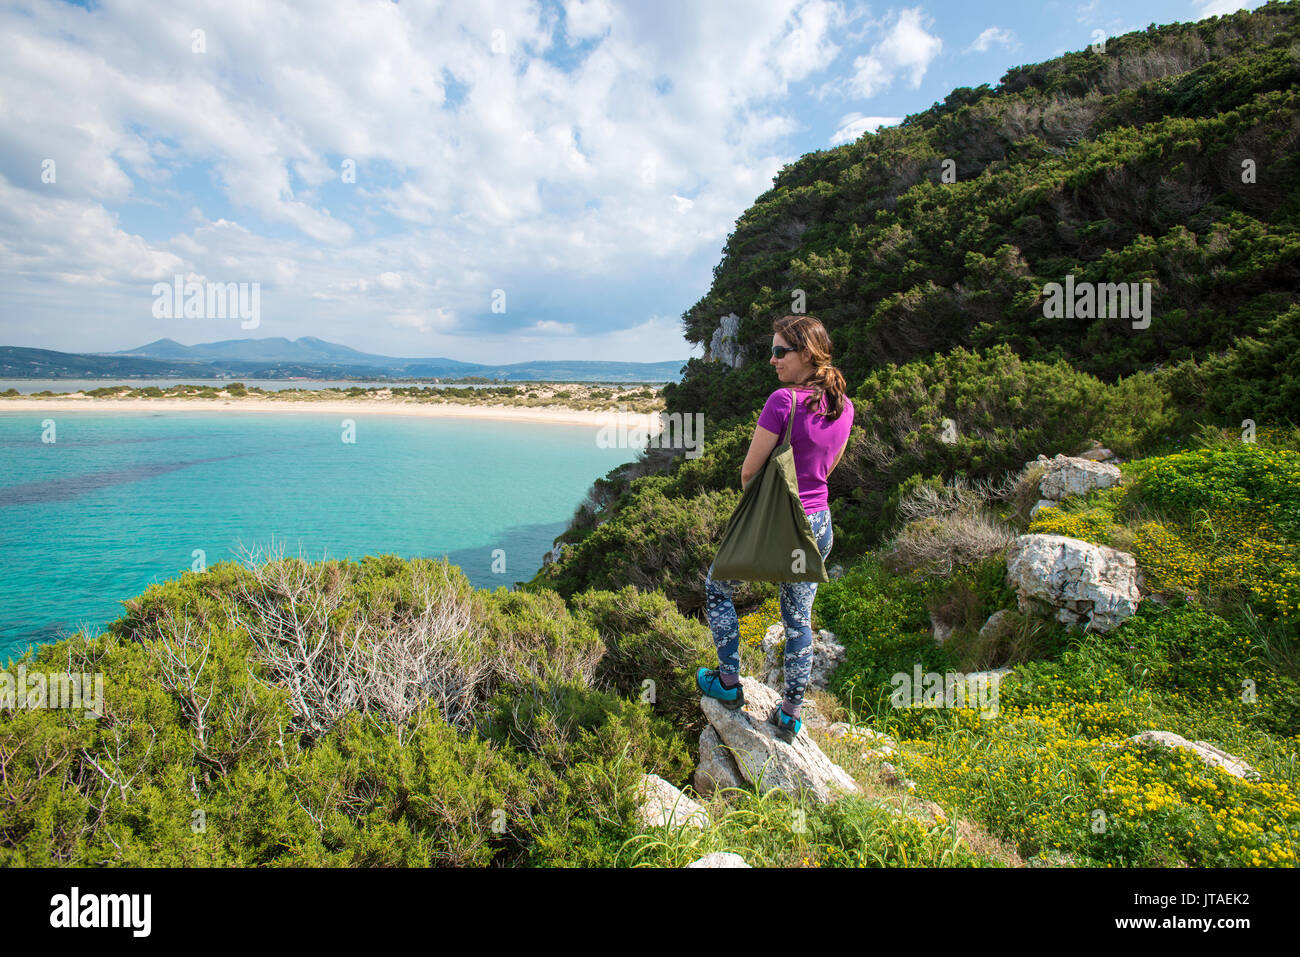 A woman explores the headland near Voidokilia Beach in the Peloponnese, Greece, Europe Stock Photo